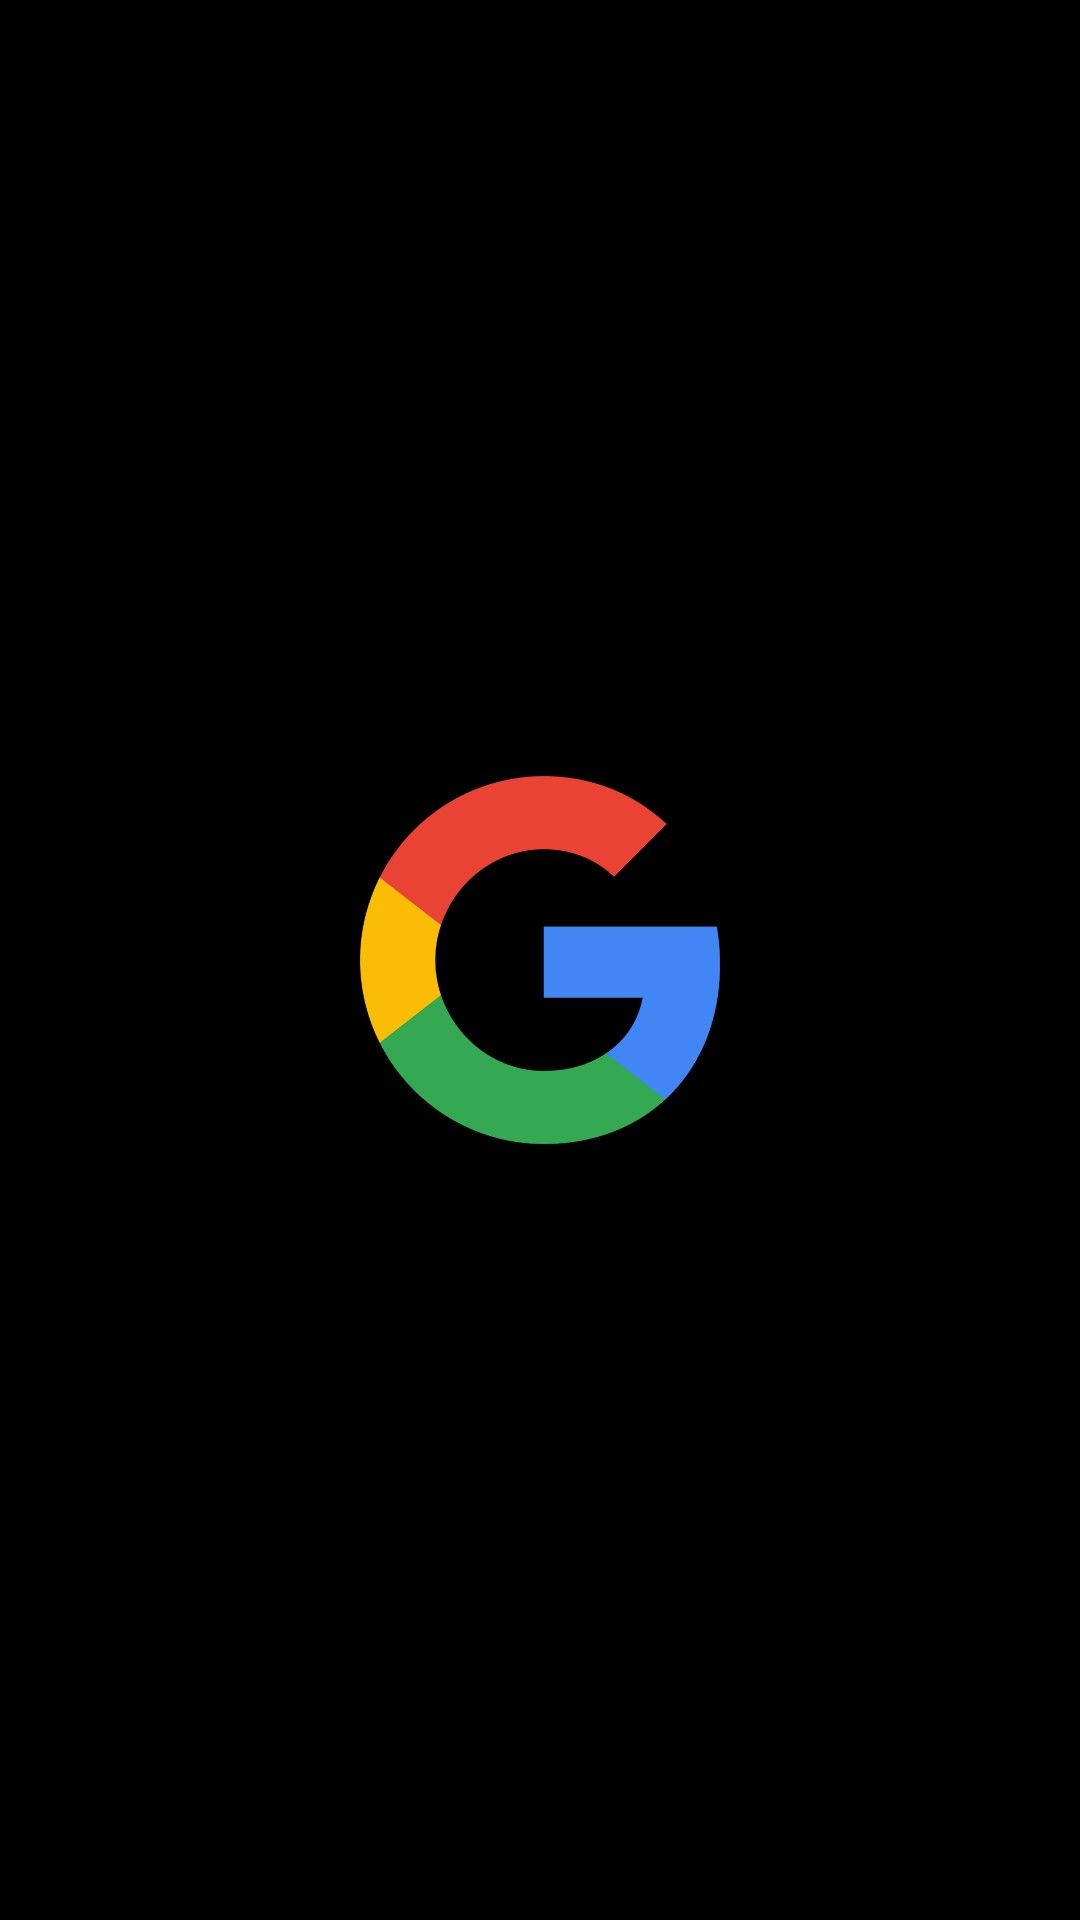 Google G Logo On Black Wallpaper